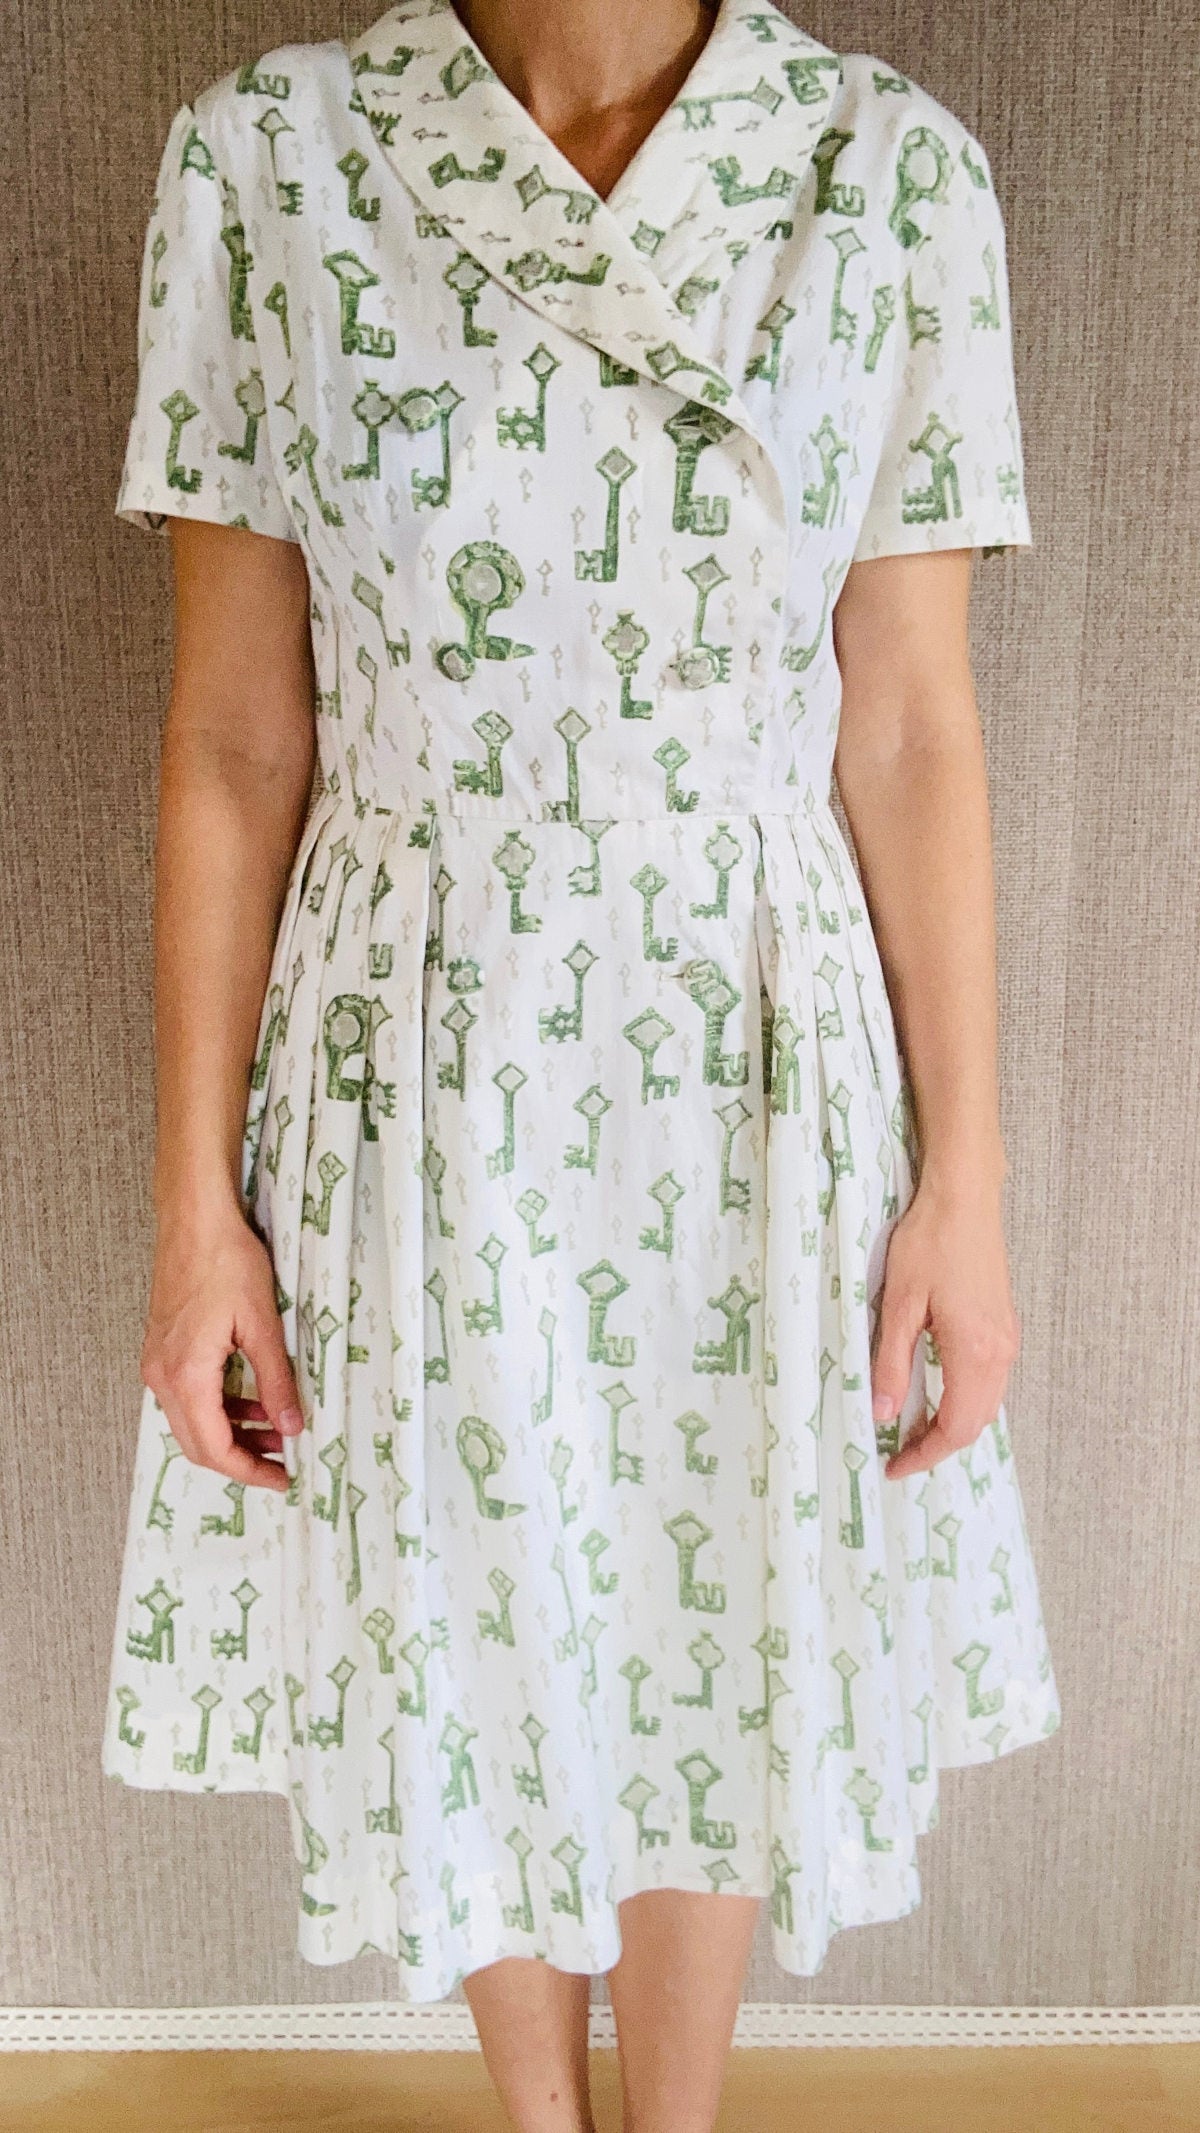 mein herzblut vintage Kleid 1970er Jahre bedruckt mit Schlüssel. Niederbayerischer Online Shop.